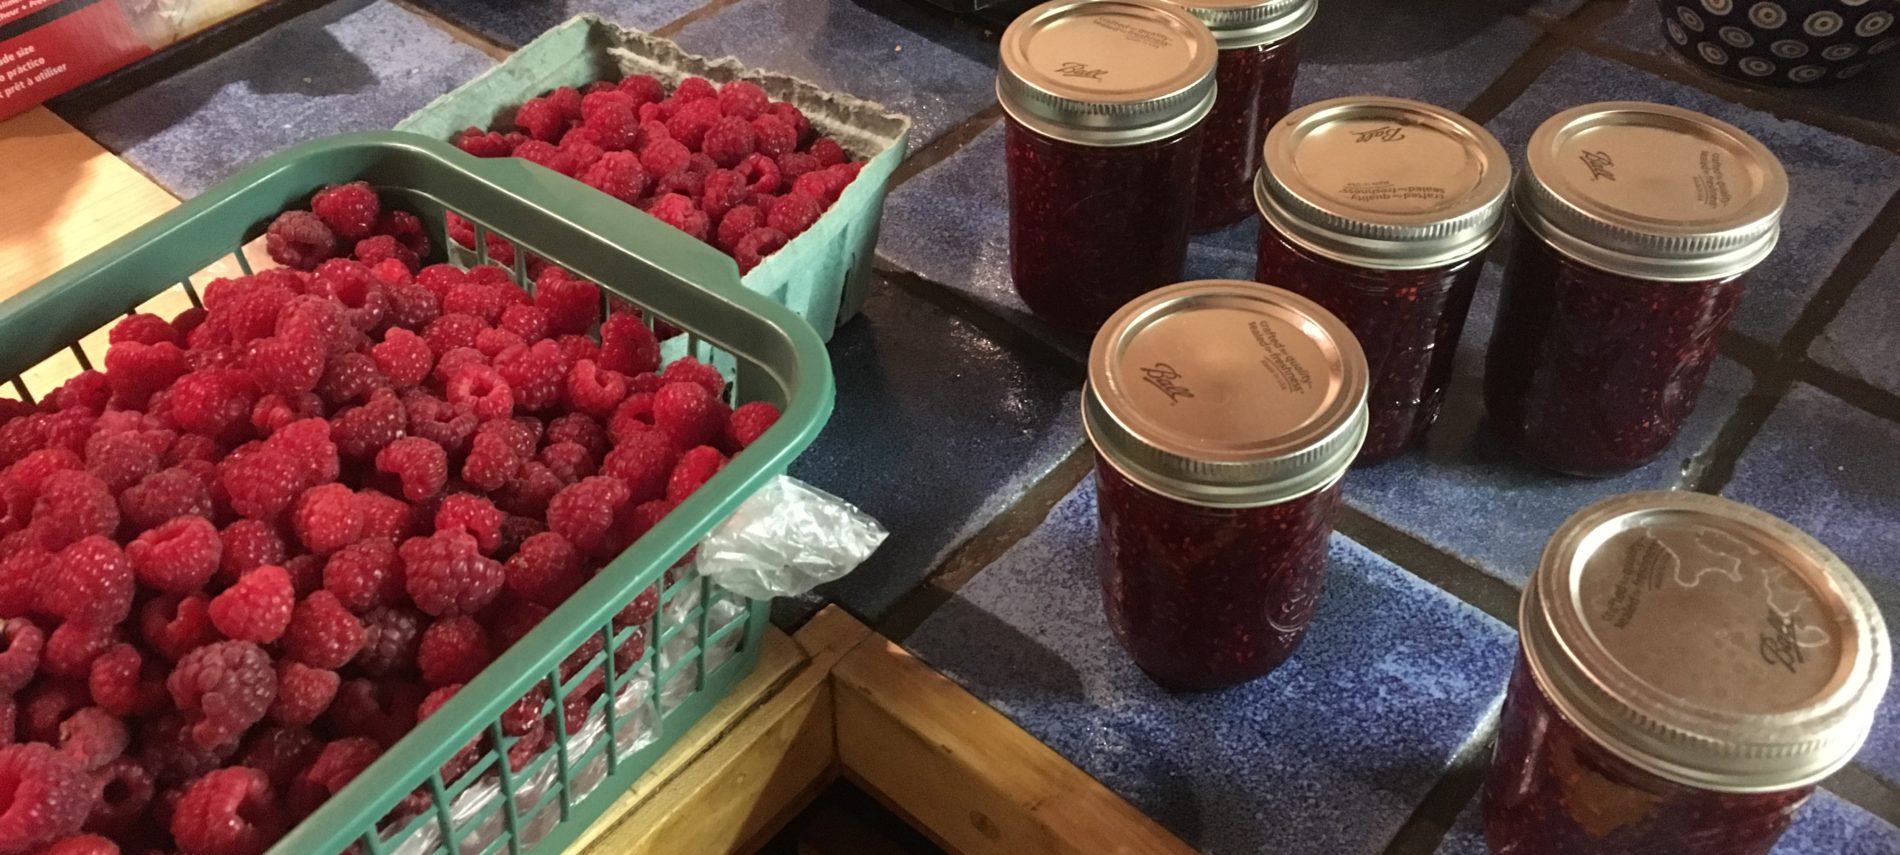 A green basket of raspberries beside jars of raspberry jam.